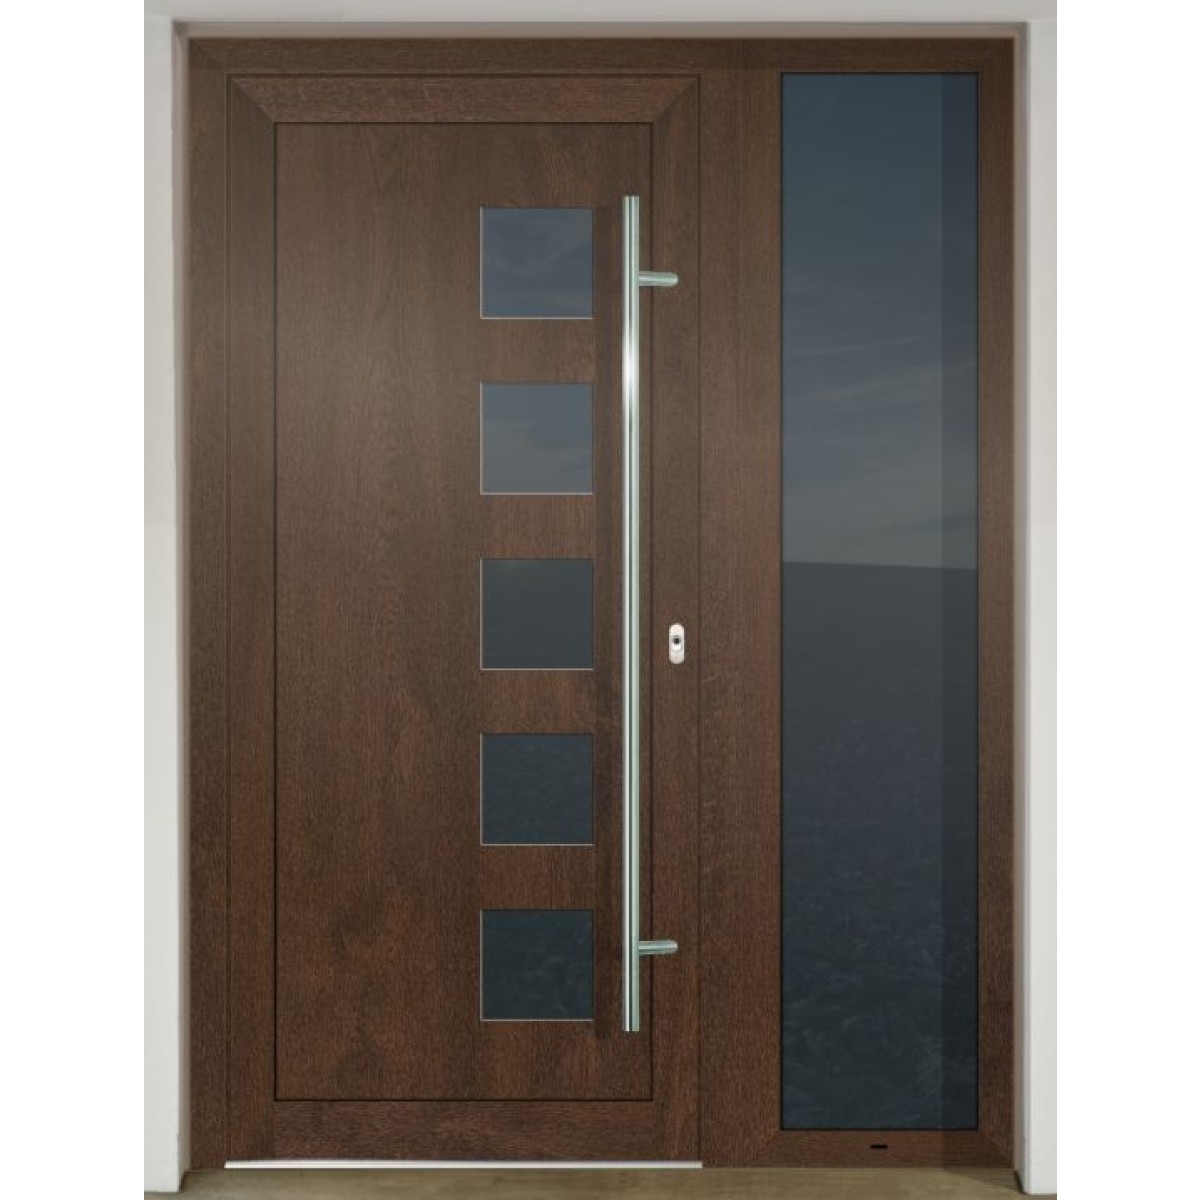 Gava HPL 929 Nussbaum - entrance door